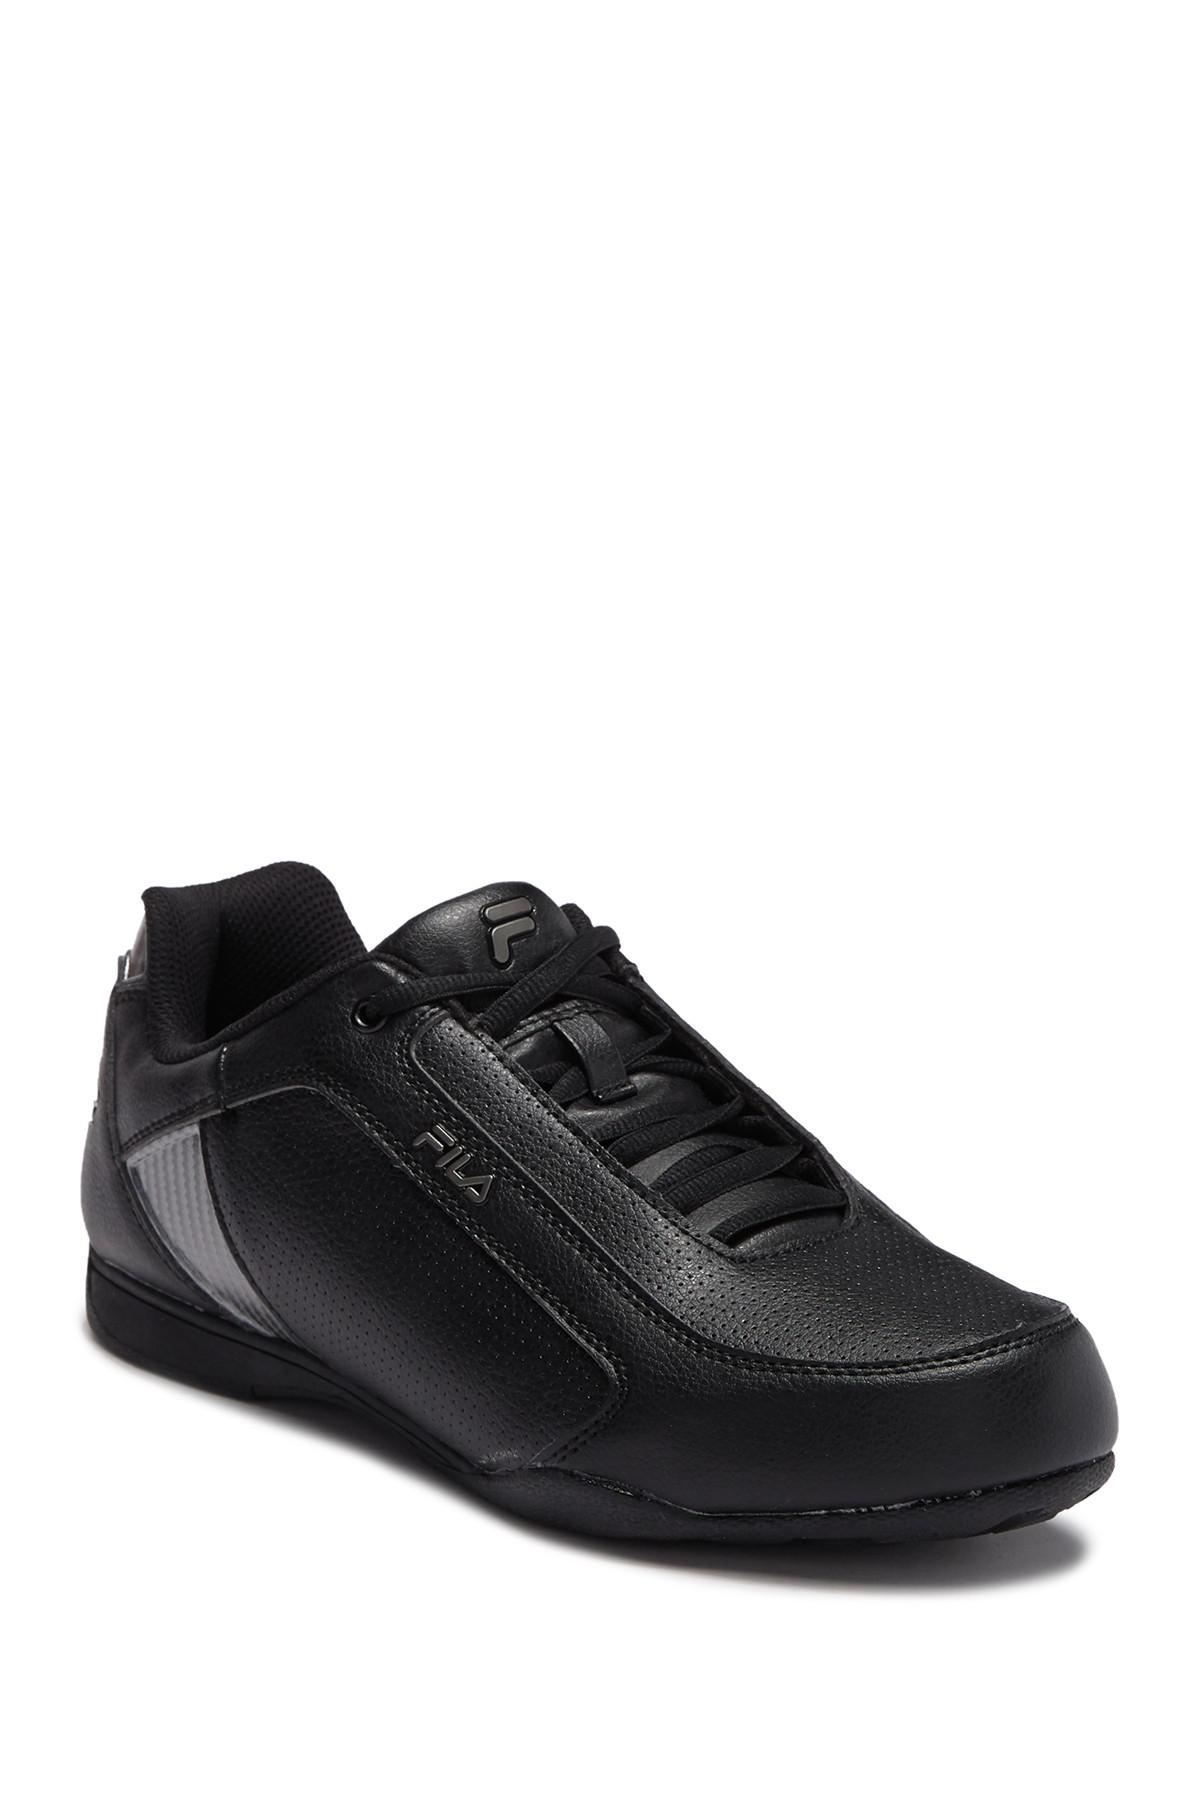 Fila Synthetic Tiltshift Sneaker in Black for Men - Lyst